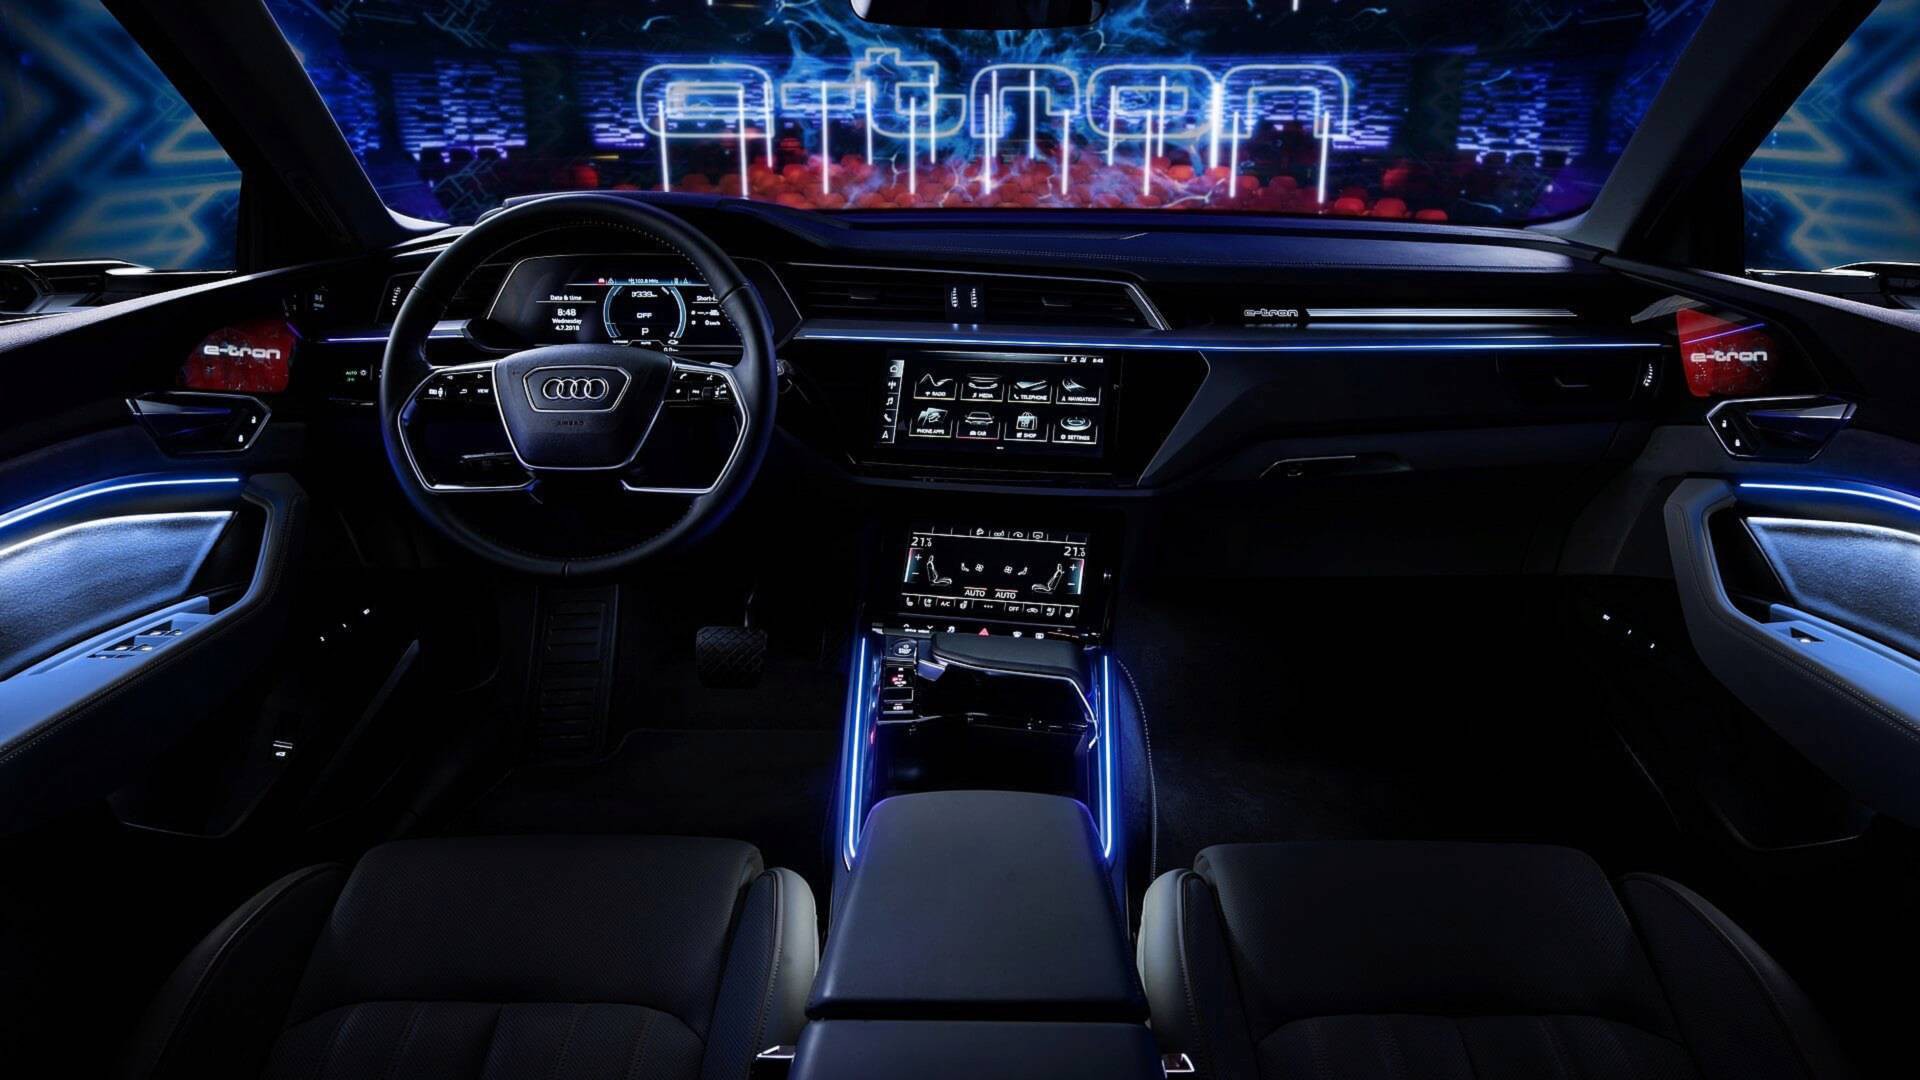 Nội thất xe Audi với 5 màn hình sẽ khiến bạn ngạc nhiên về tính năng và công nghệ tiên tiến. Với 5 màn hình hiển thị thông tin và hơn 10 loa, chiếc xe sẽ là một không gian giải trí đa phương tiện hoàn hảo. Hãy cùng xem hình ảnh liên quan đến nội thất xe Audi với 5 màn hình để tận hưởng những trải nghiệm thú vị nhất nhé!